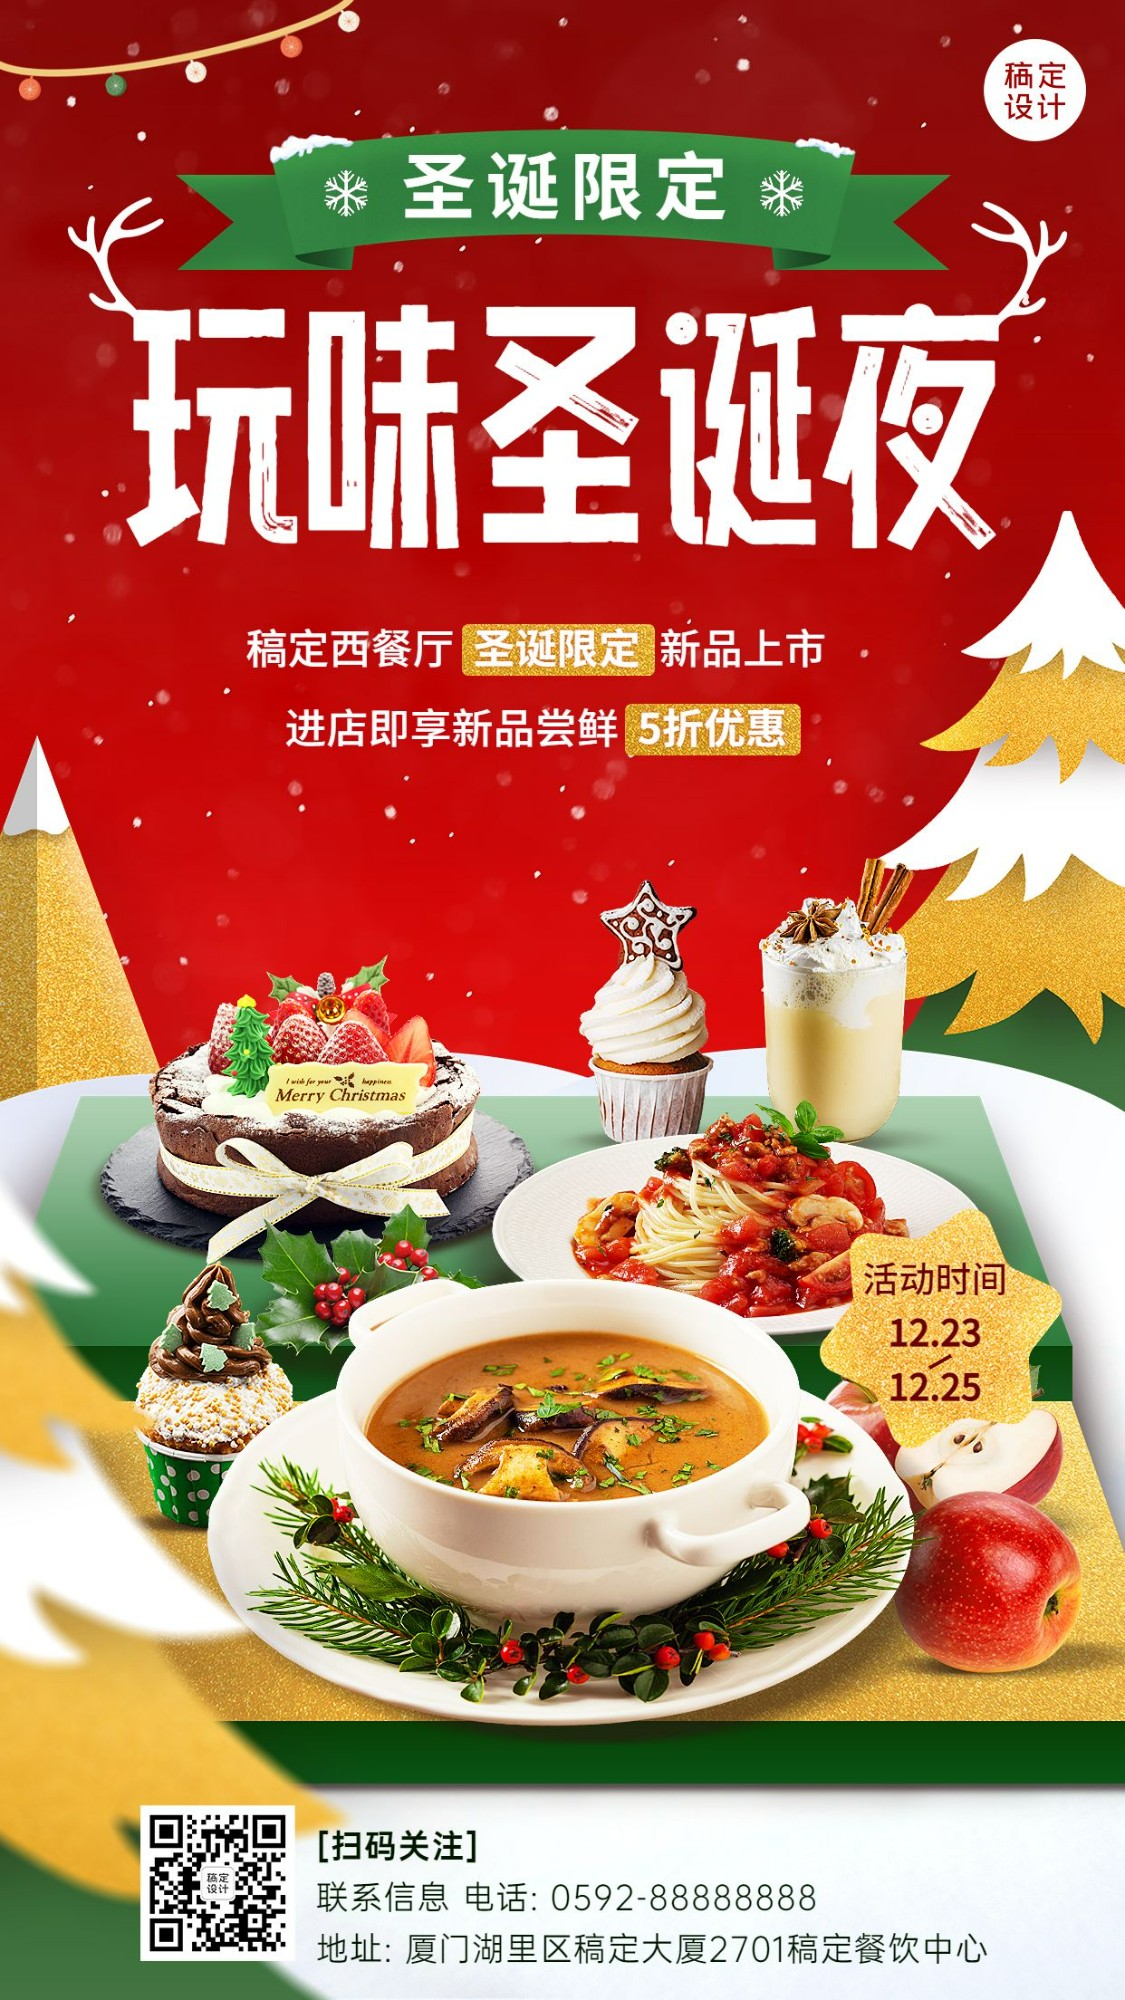 圣诞节&平安夜餐饮美食节日营销手机海报